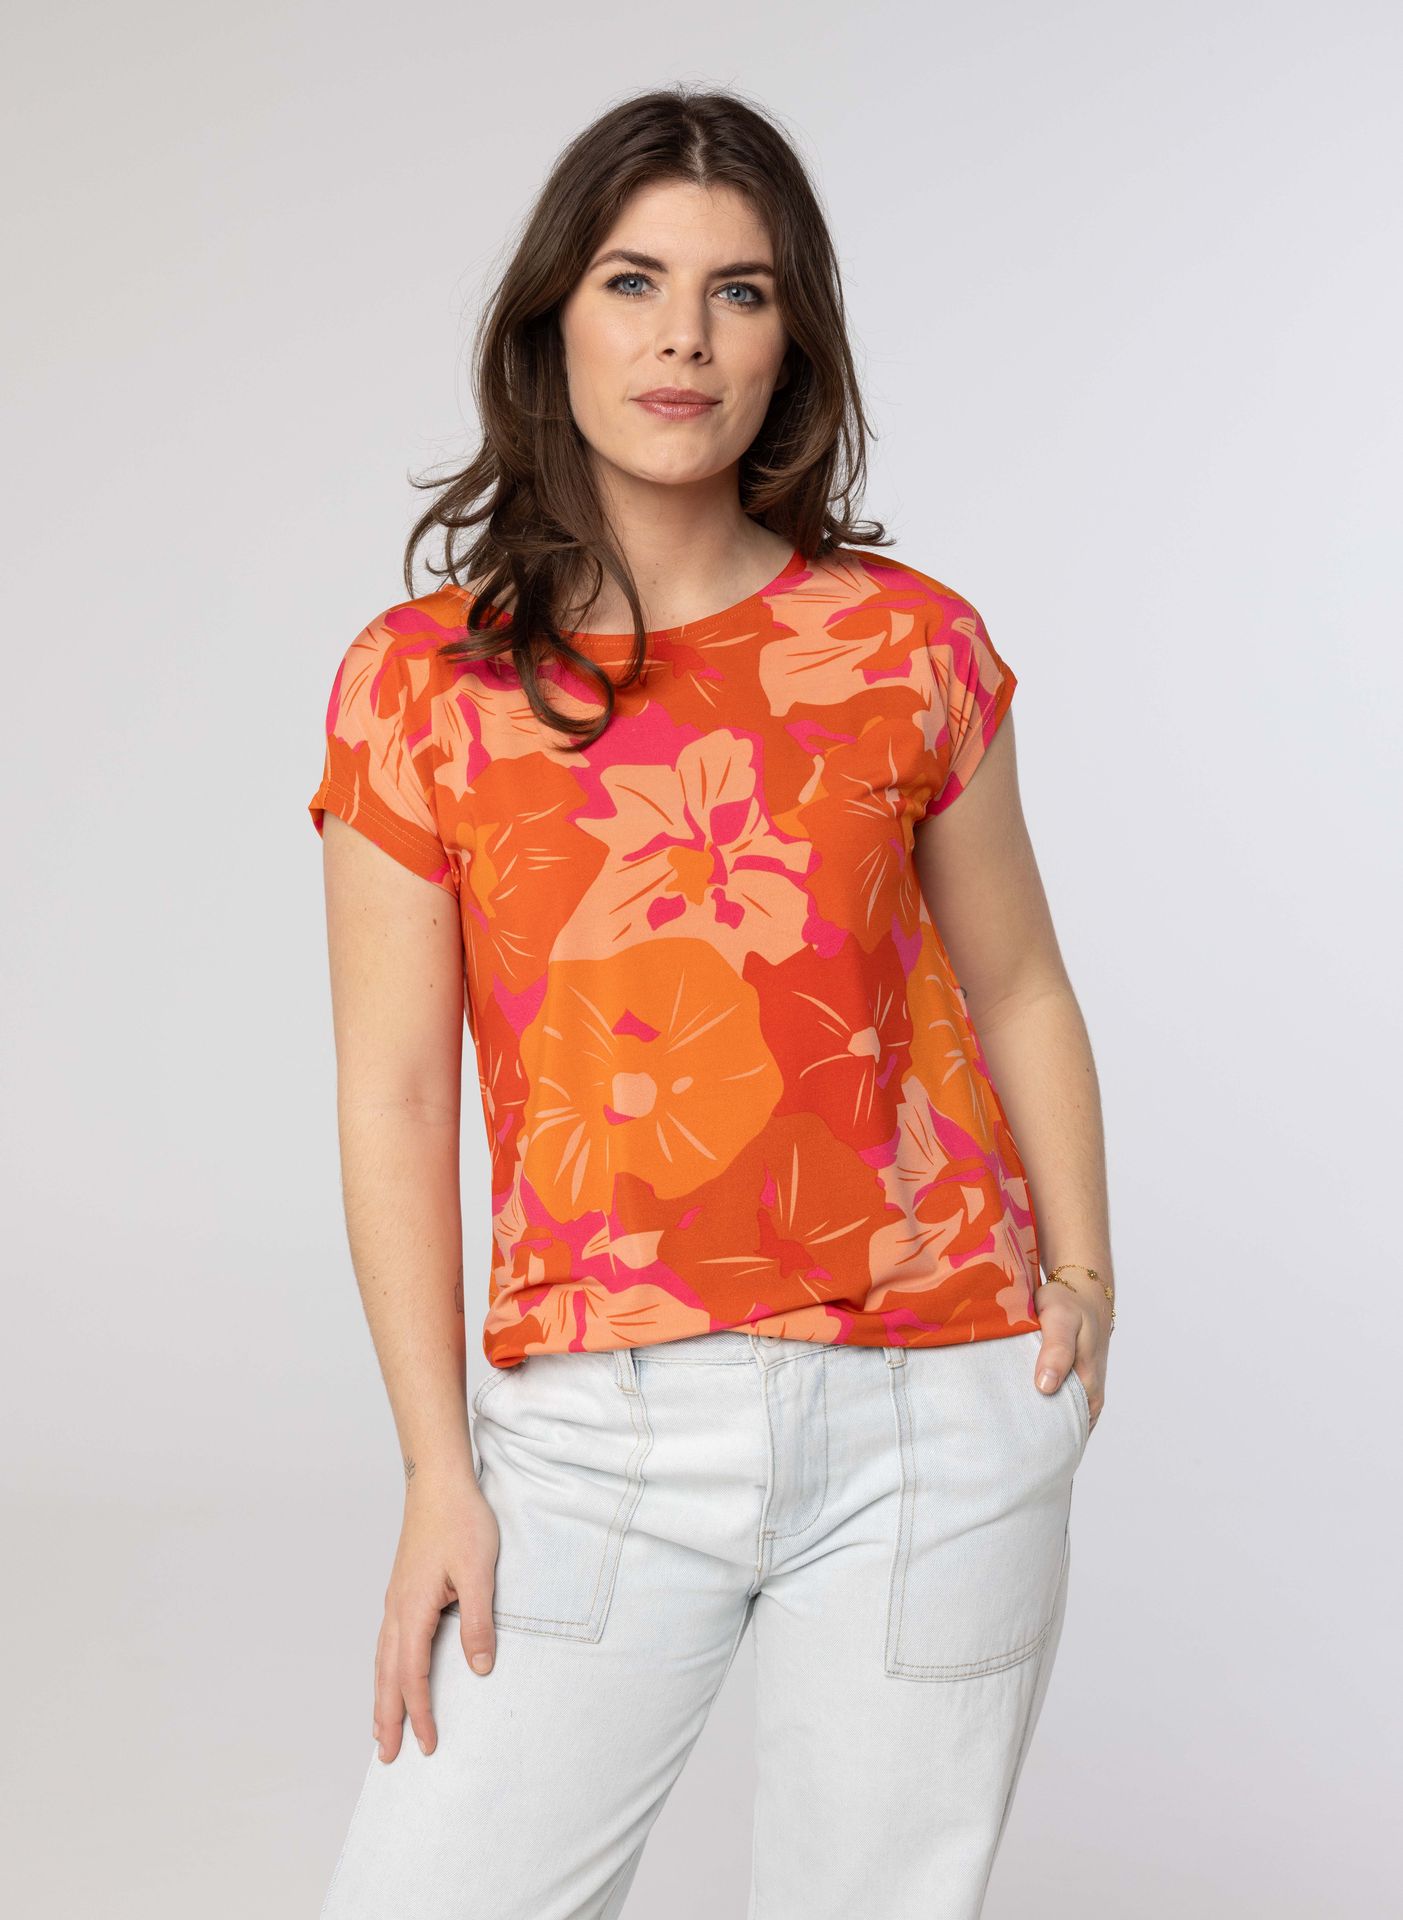 Norah Oranje shirt orange/pink 213616-739